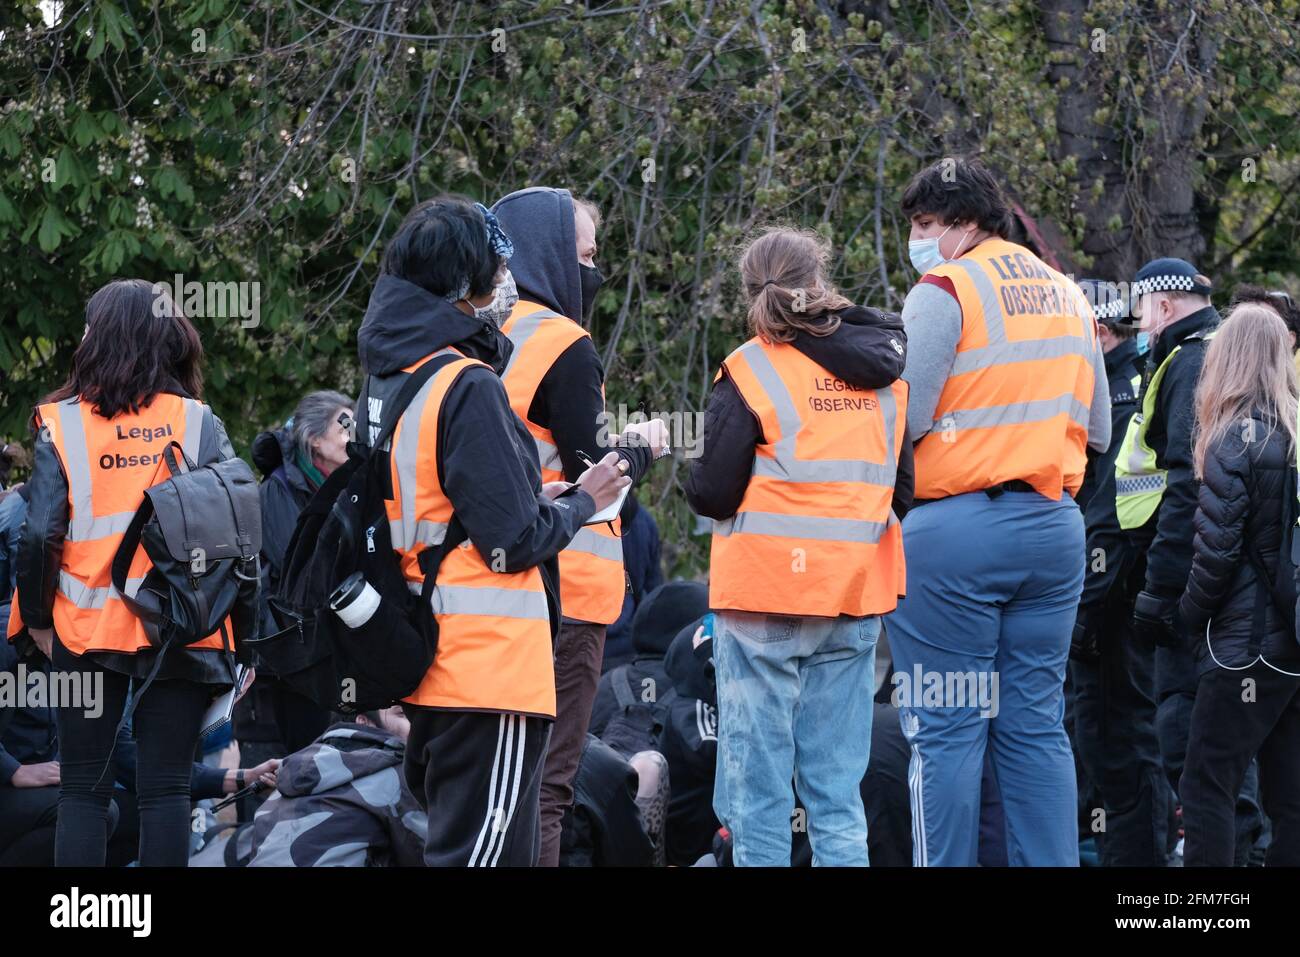 Observadores legales, voluntarios entrenados e identificados por sus chalecos de alta visibilidad monitorean las interacciones policiales en una protesta Kill the Bill en Vauxhall, Londres Foto de stock